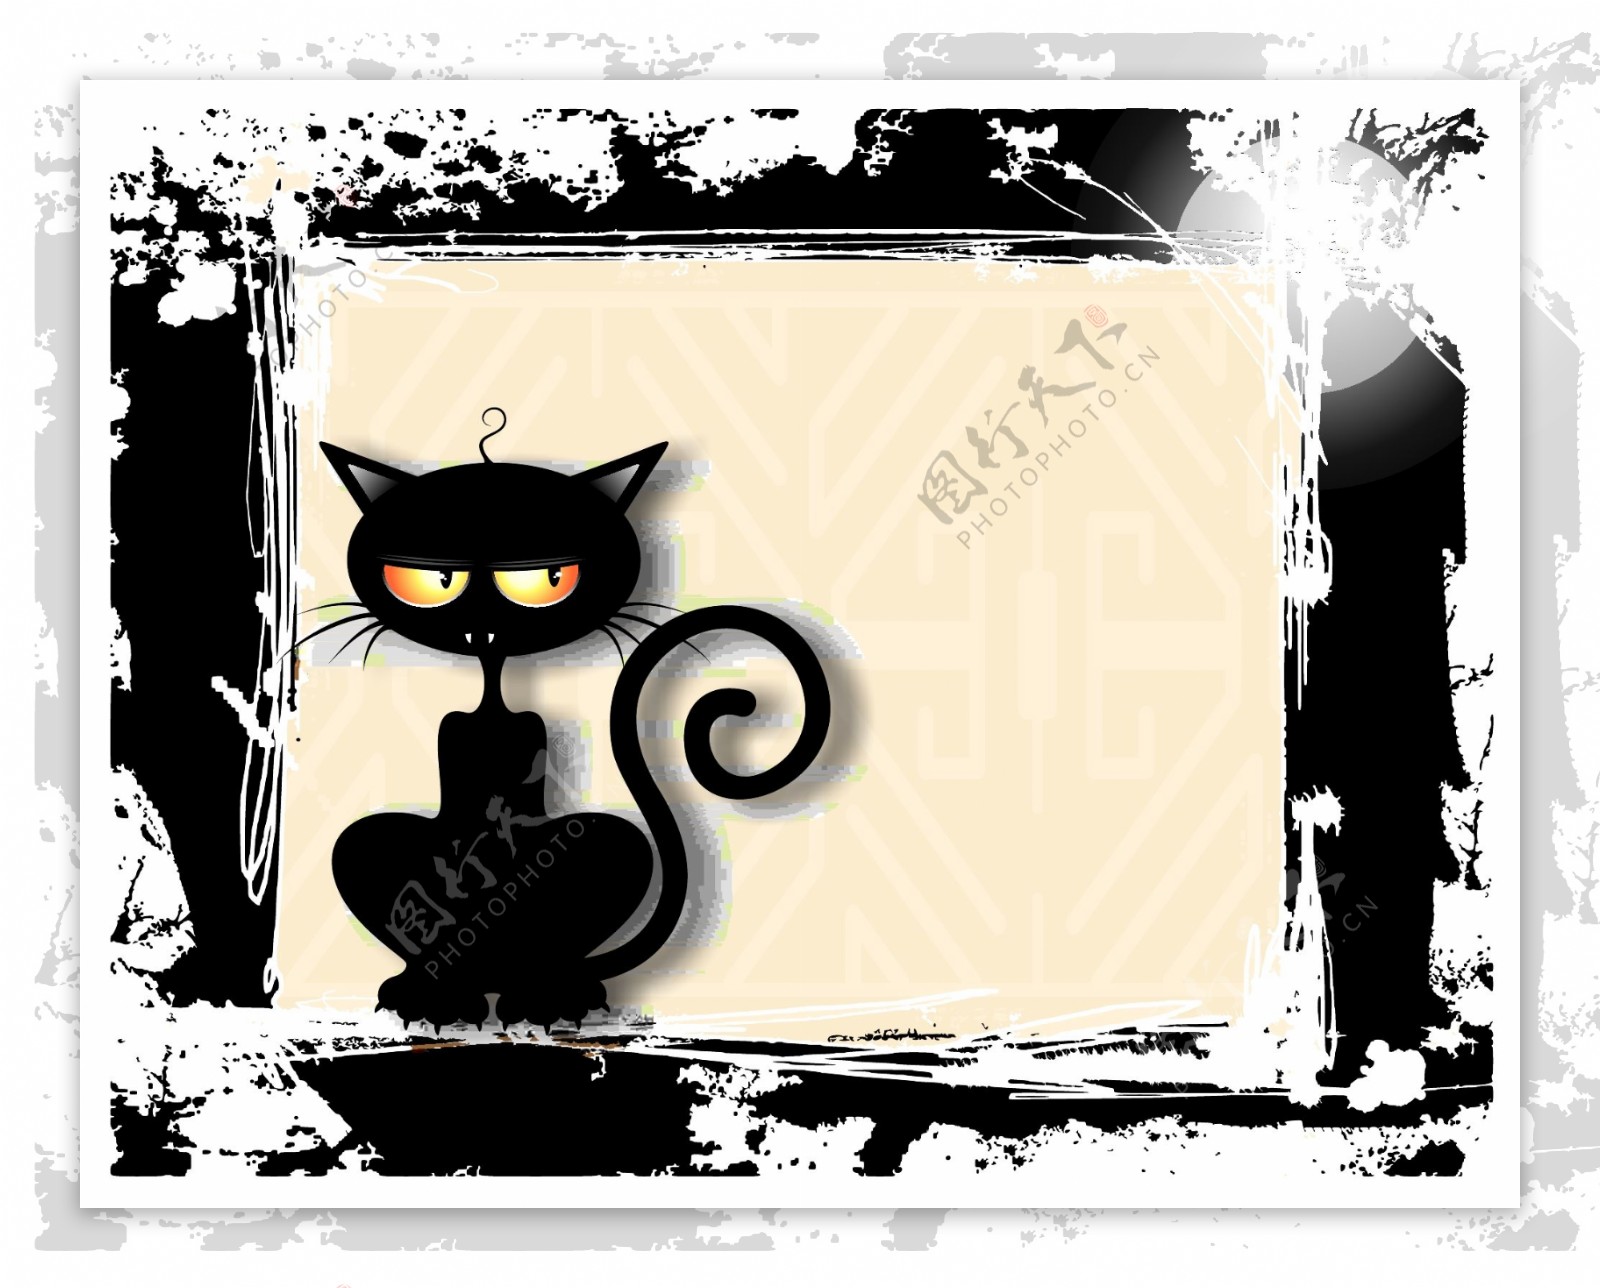 水墨黑猫背景图片